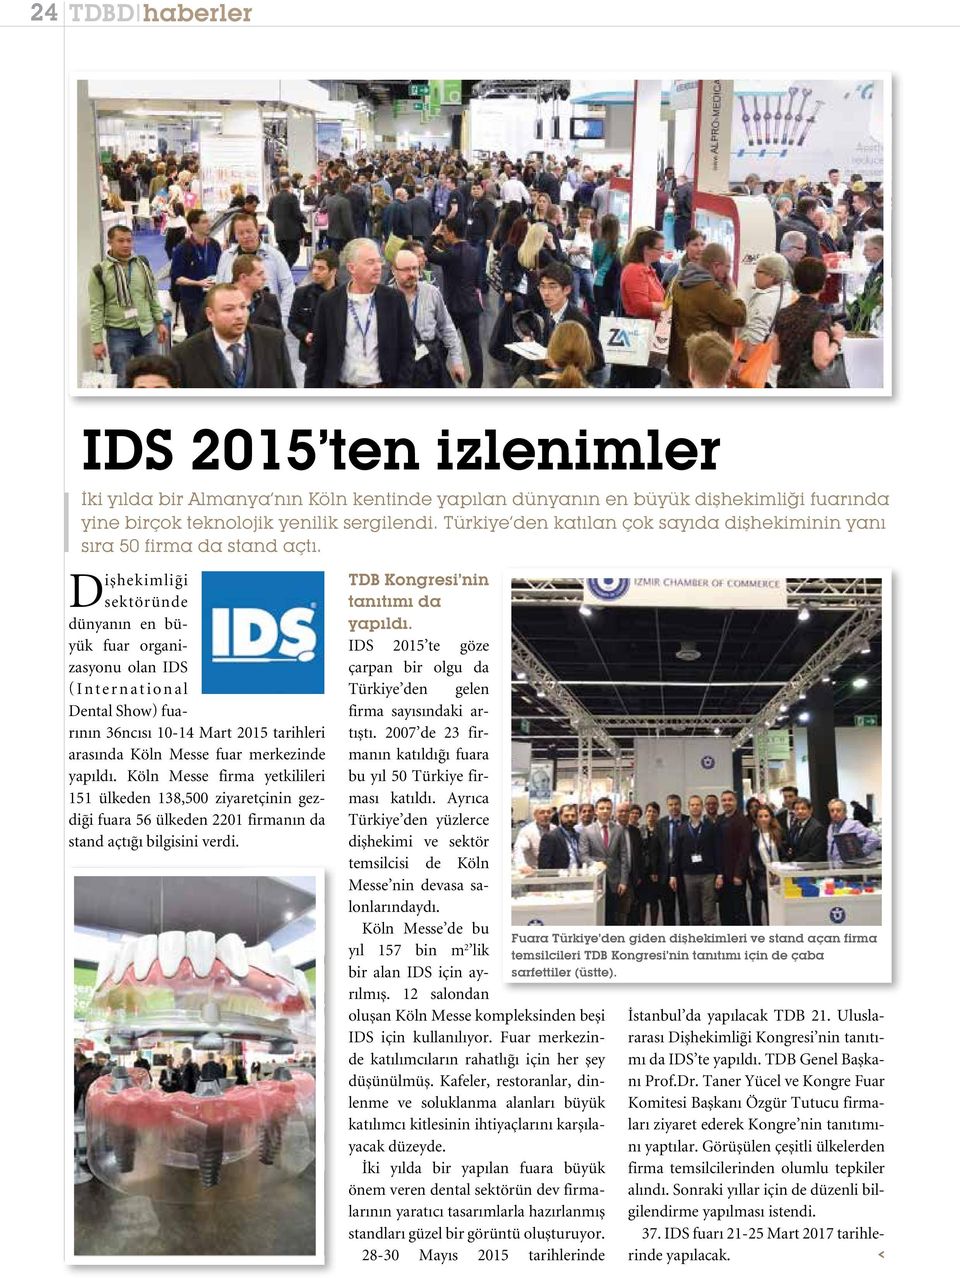 Dişhekimliği sektöründe dünyanın en büyük fuar organizasyonu olan IDS (International Dental Show) fuarının 36ncısı 10-14 Mart 2015 tarihleri arasında Köln Messe fuar merkezinde yapıldı.